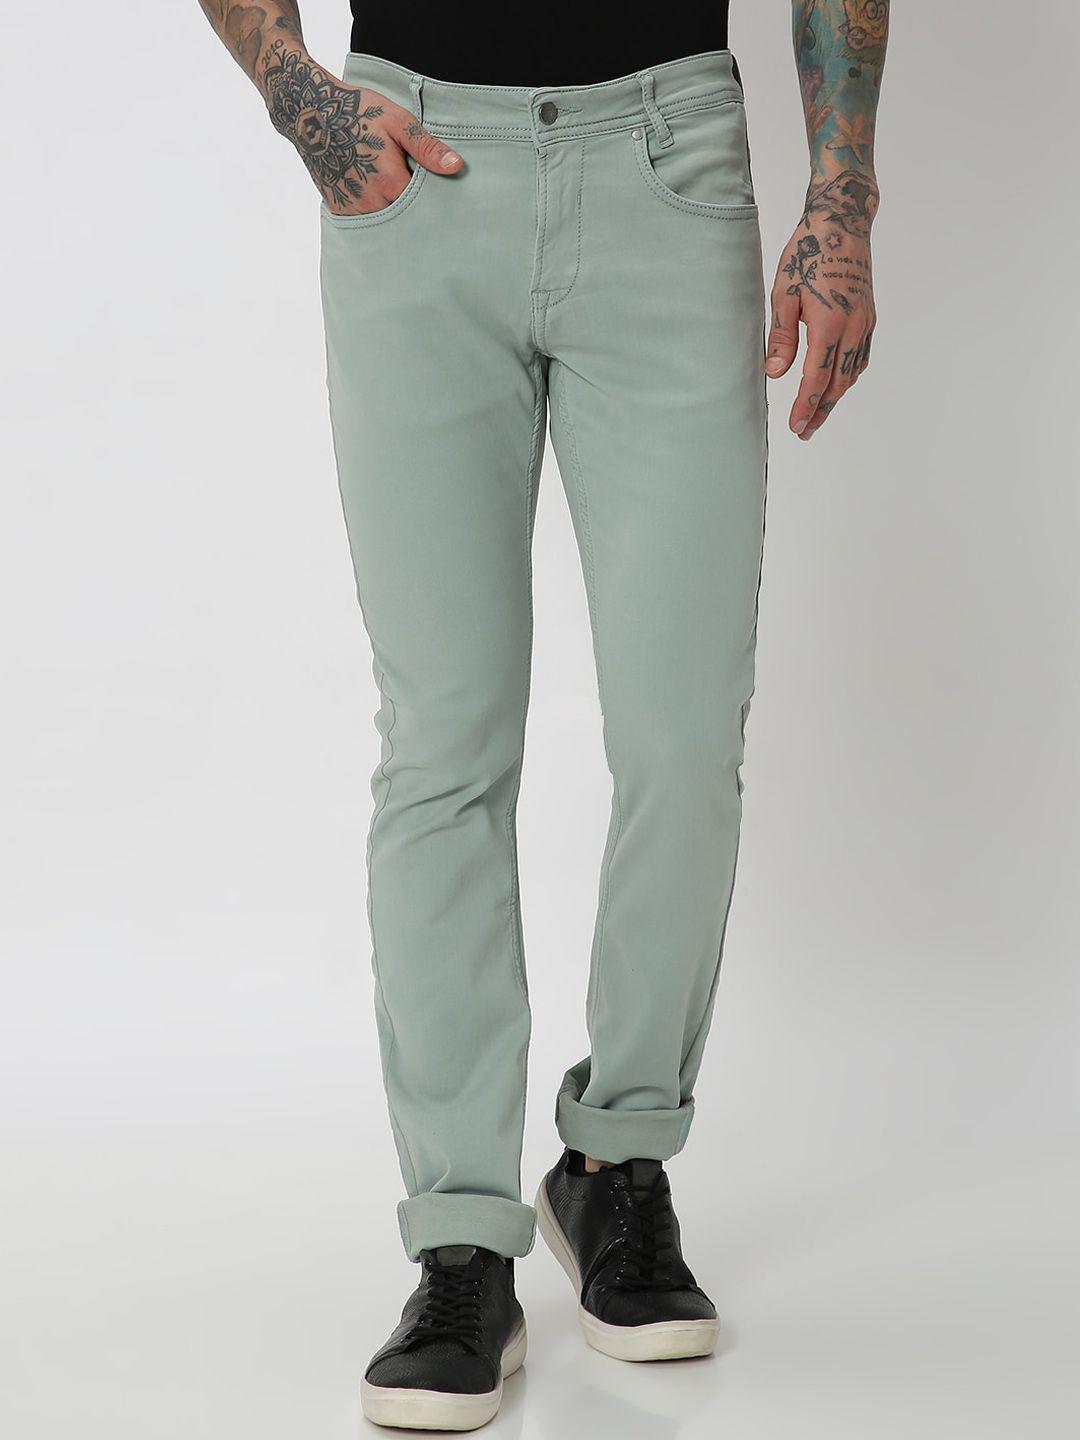 mufti-men-green-slim-fit-reversible-trousers